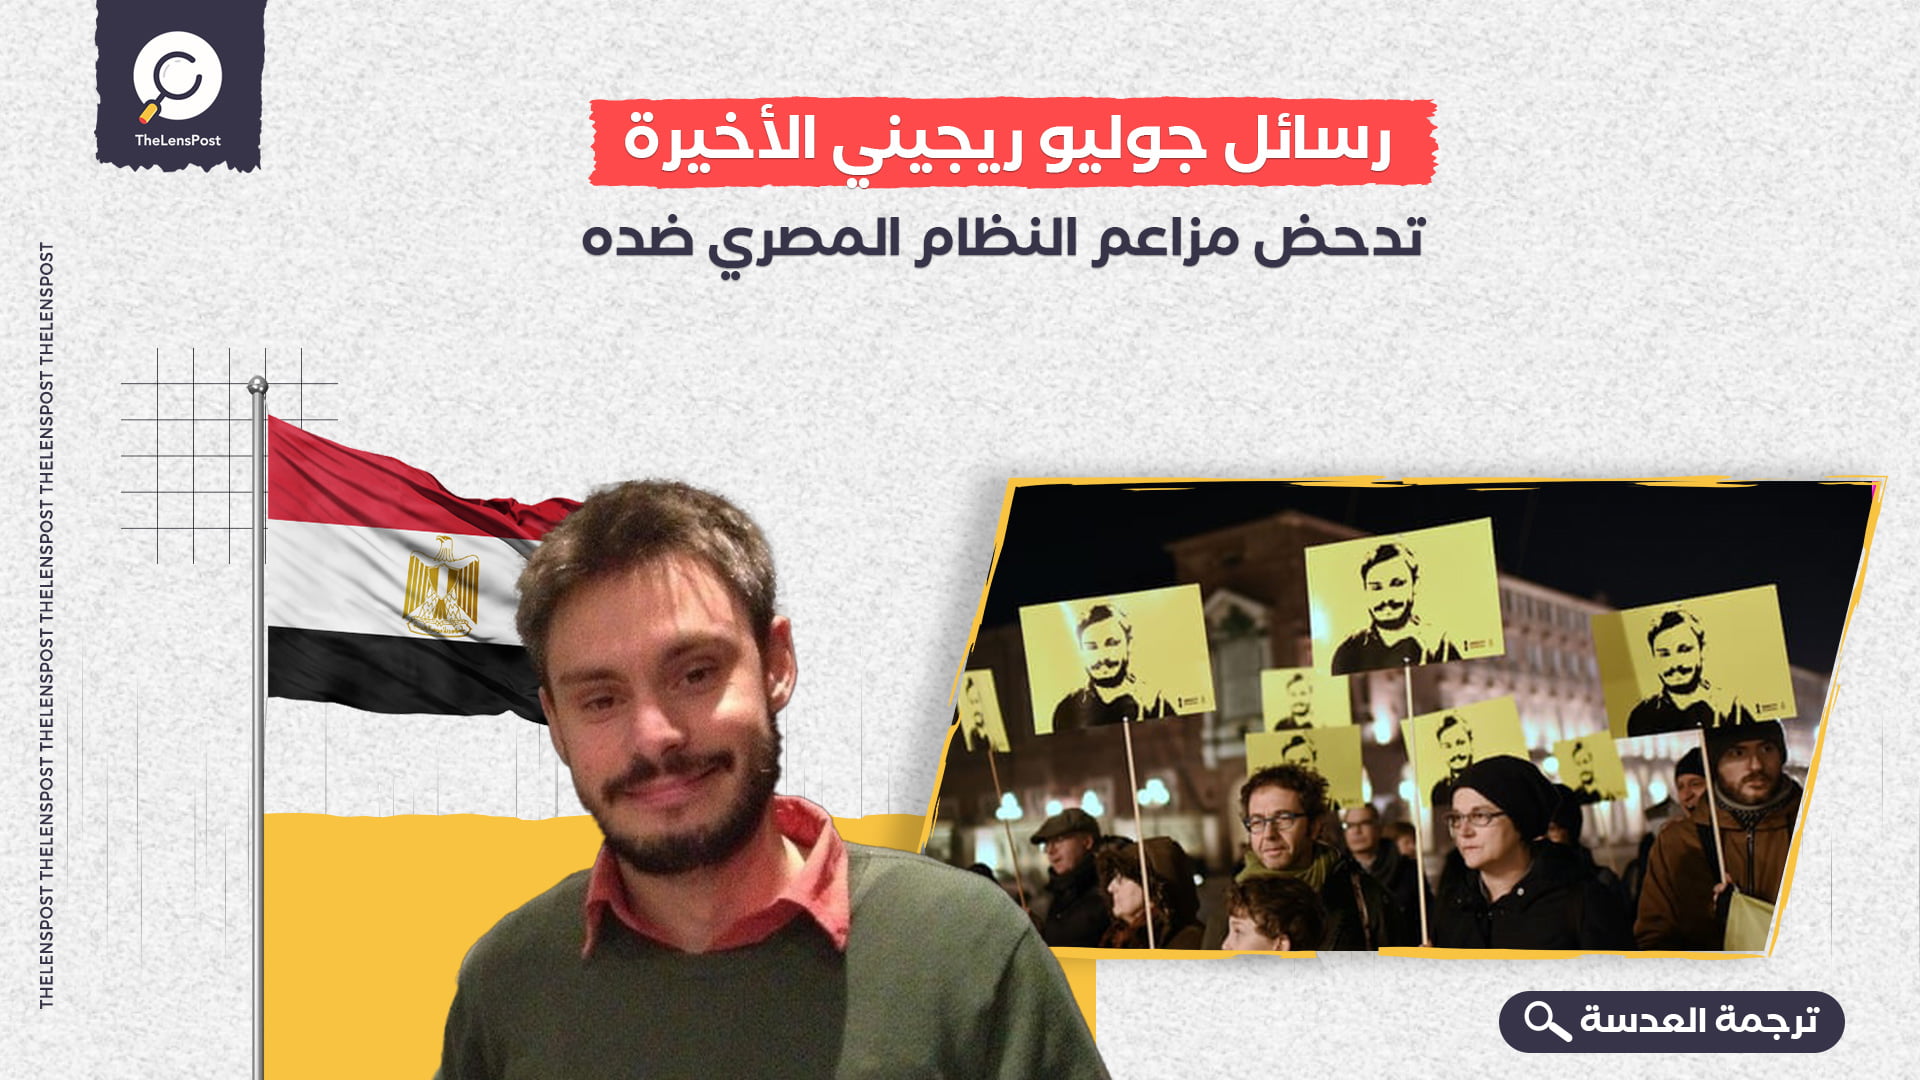 رسائل جوليو ريجيني الأخيرة تدحض مزاعم النظام المصري ضده